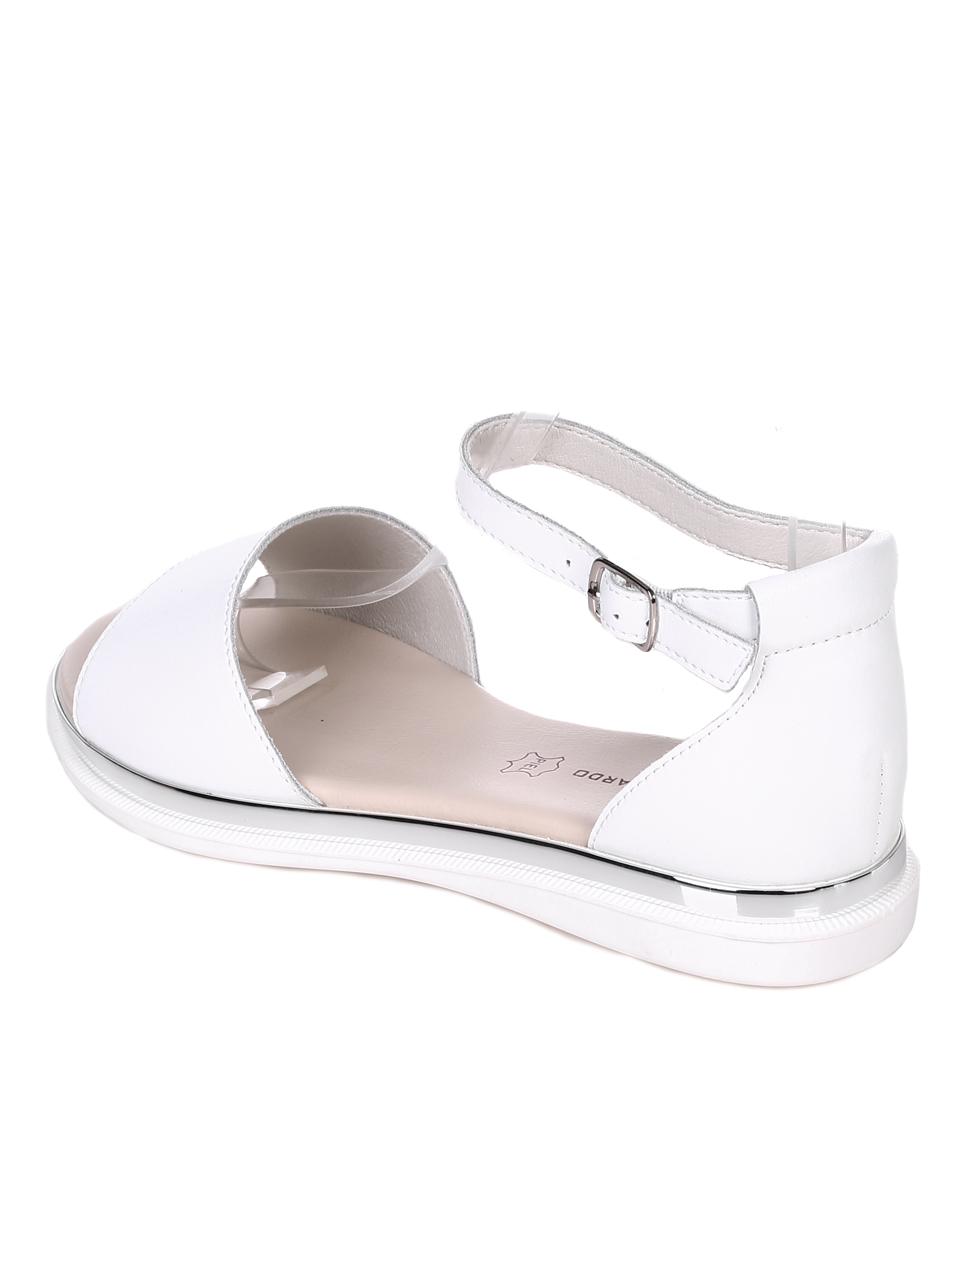 Ежедневни дамски равни сандали от естествена кожа в бяло 4AF-22191 white (24175)